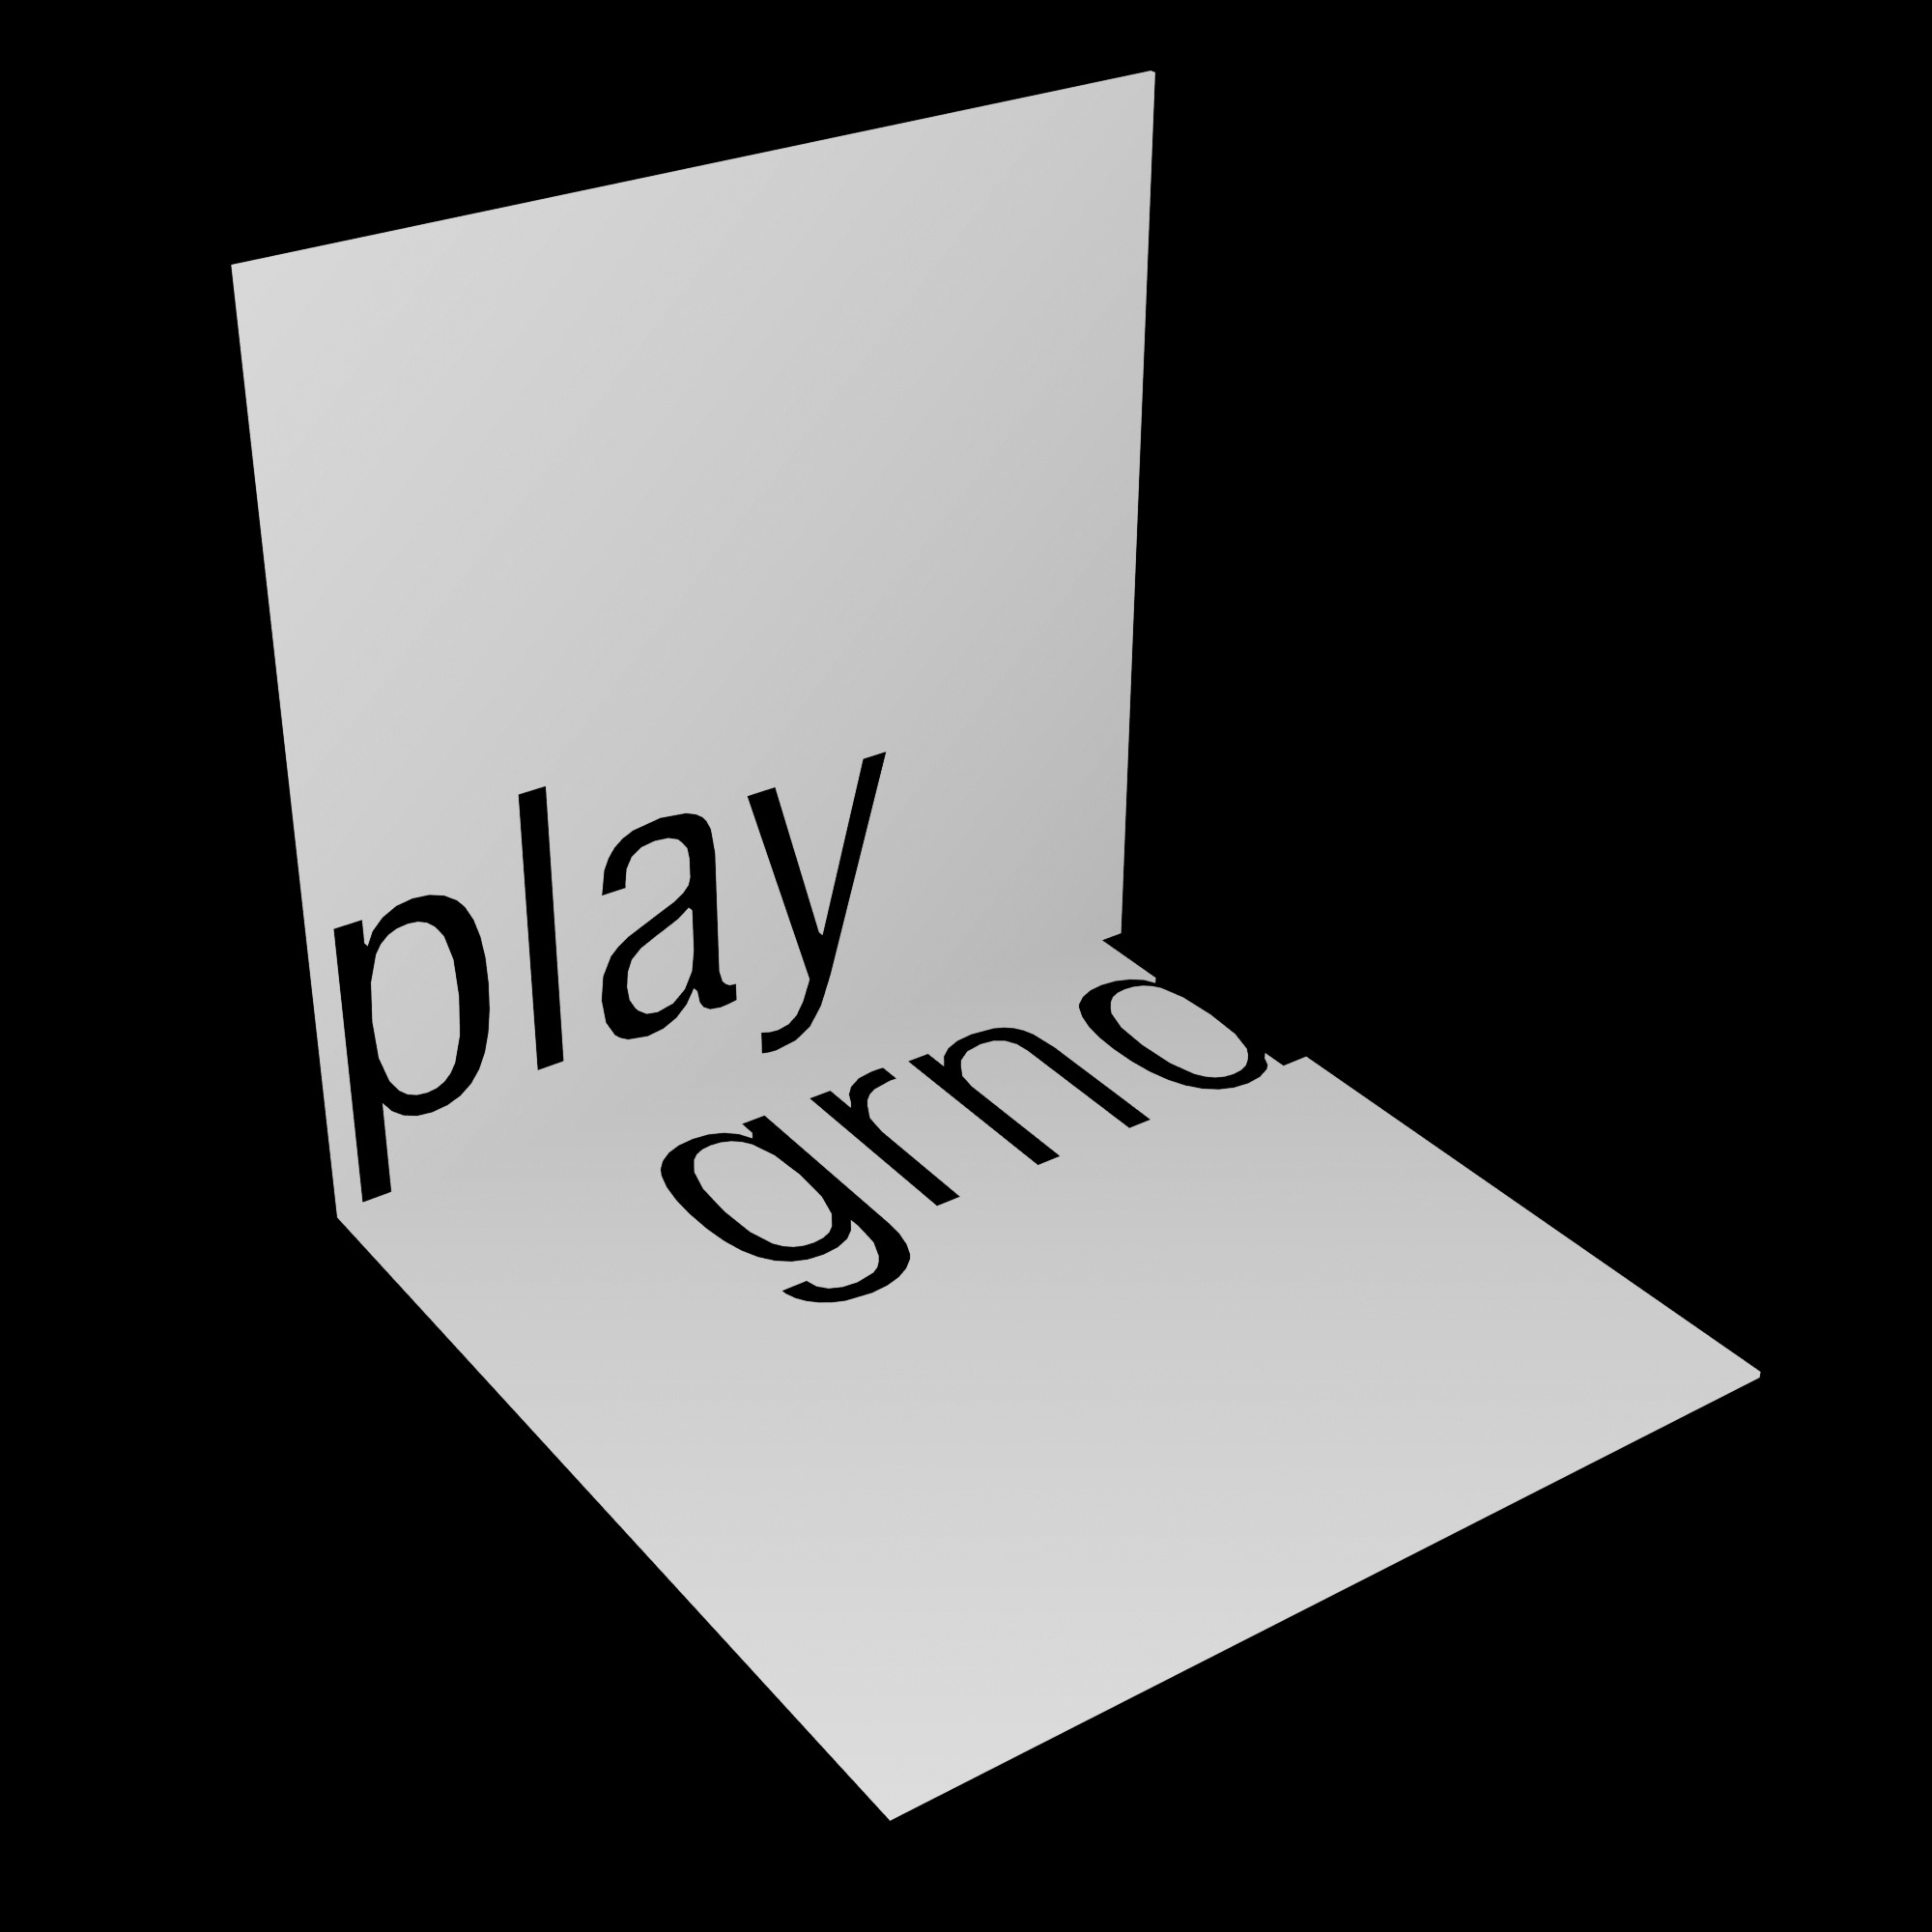 play|grnd studio llc